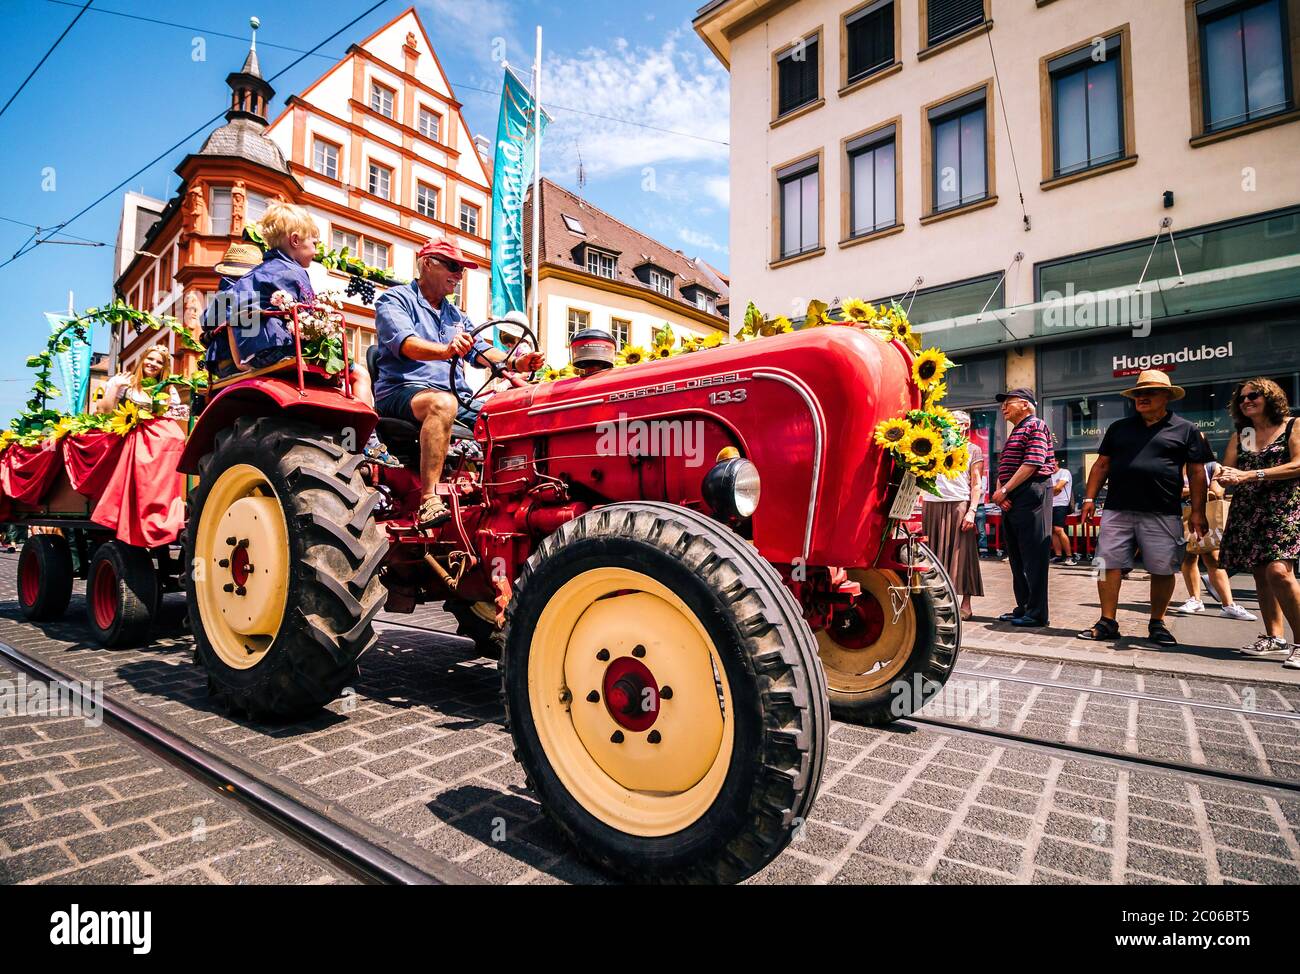 Antico trattore rosso decorato in stile tradizionale durante la sfilata di apertura del festival estivo. Kiliani è un enorme festival folk di 2 settimane con musica di birra e di ottone. Foto Stock